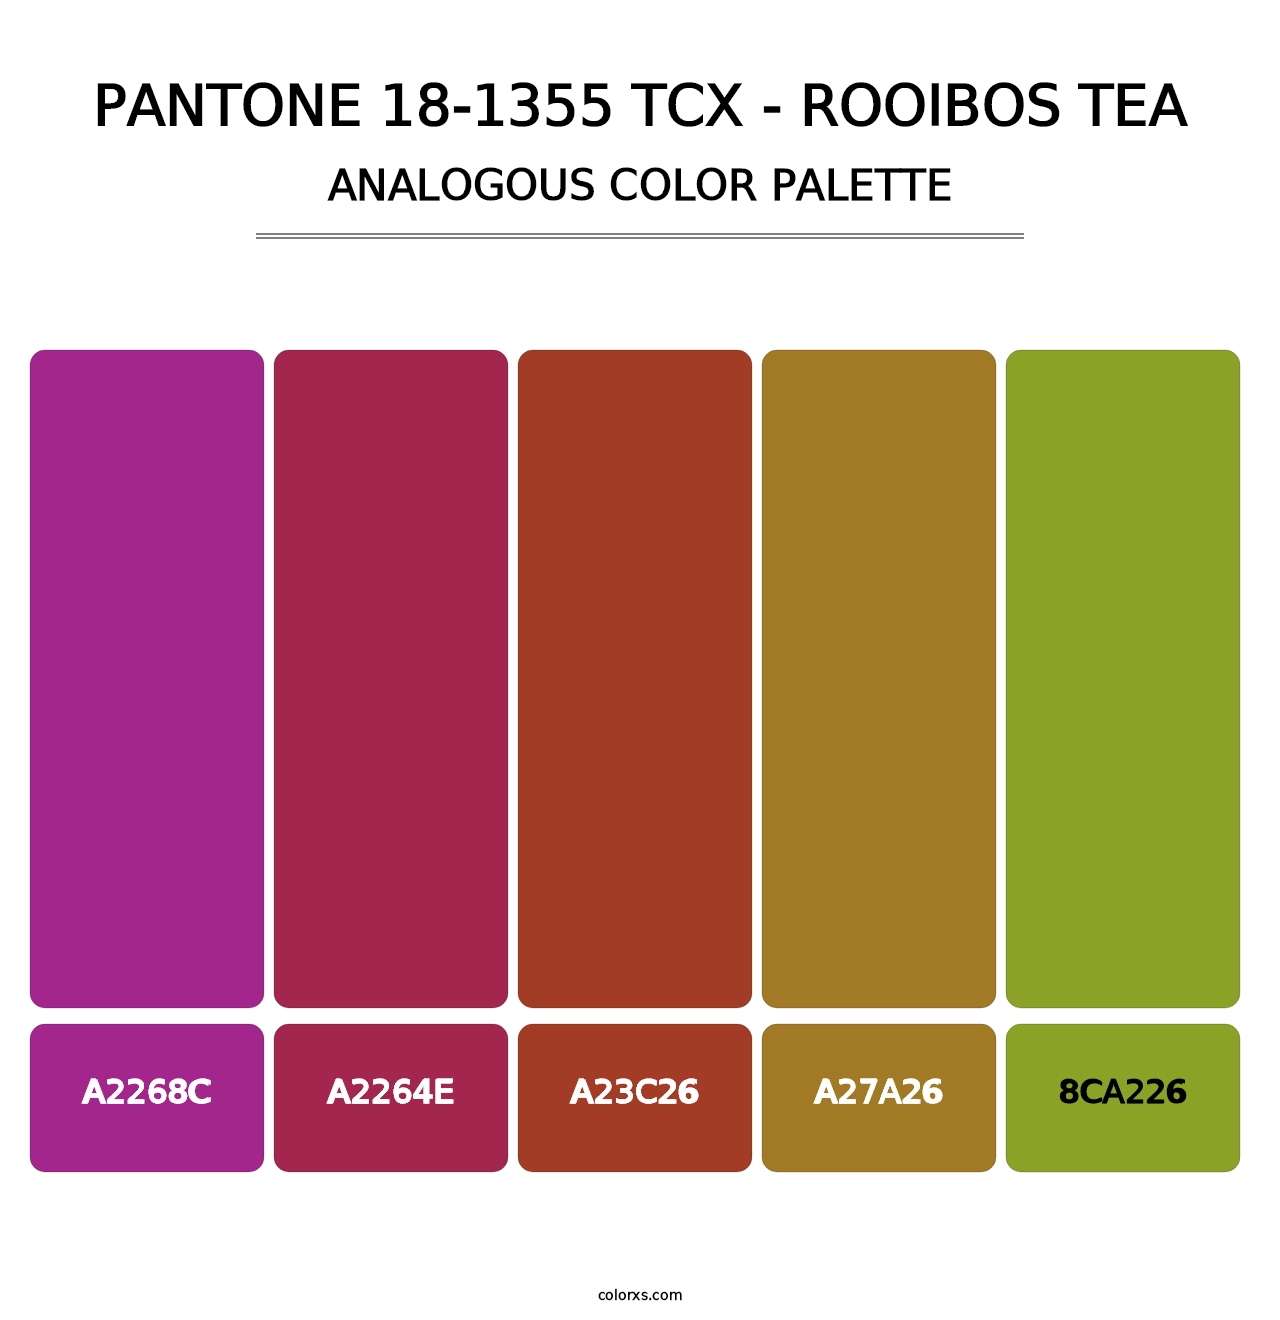 PANTONE 18-1355 TCX - Rooibos Tea - Analogous Color Palette